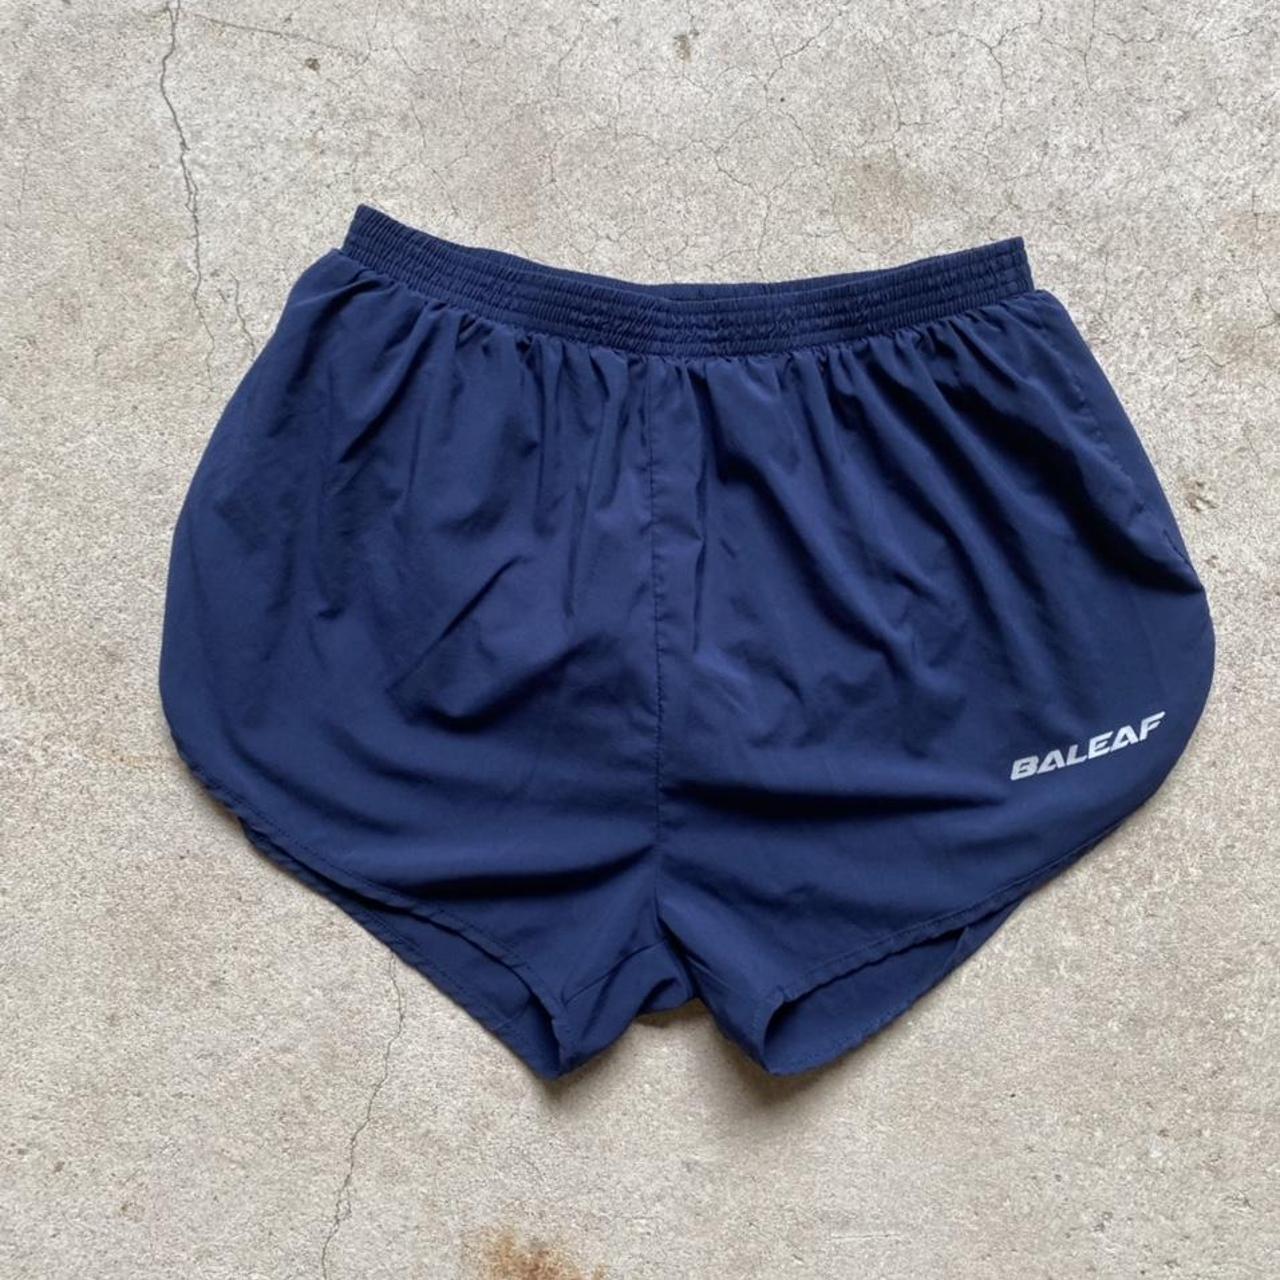 Baleaf navy blue running shorts 28 inch waist... - Depop